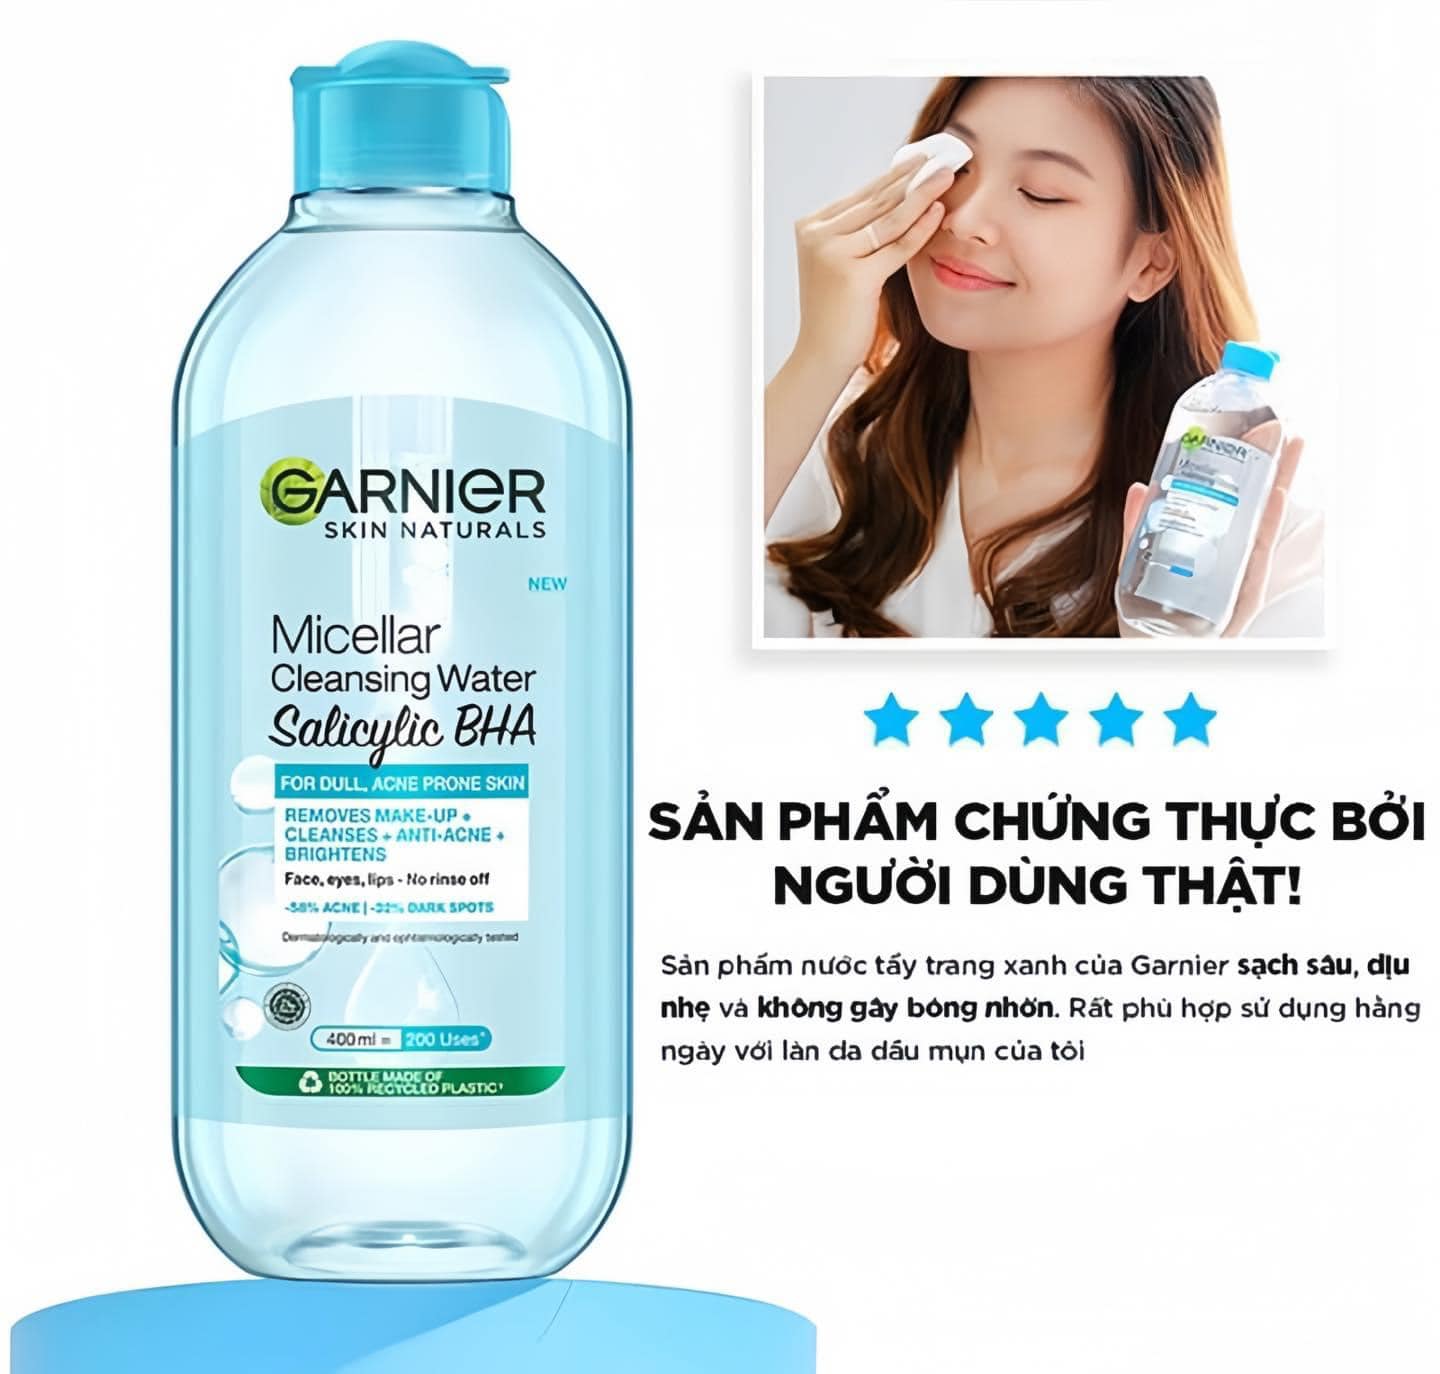 Nước Tẩy Trang Dành Cho Da Dầu Mụn Garnier Salicylic BHA Micellar Cleansing Water 400ml - XANH